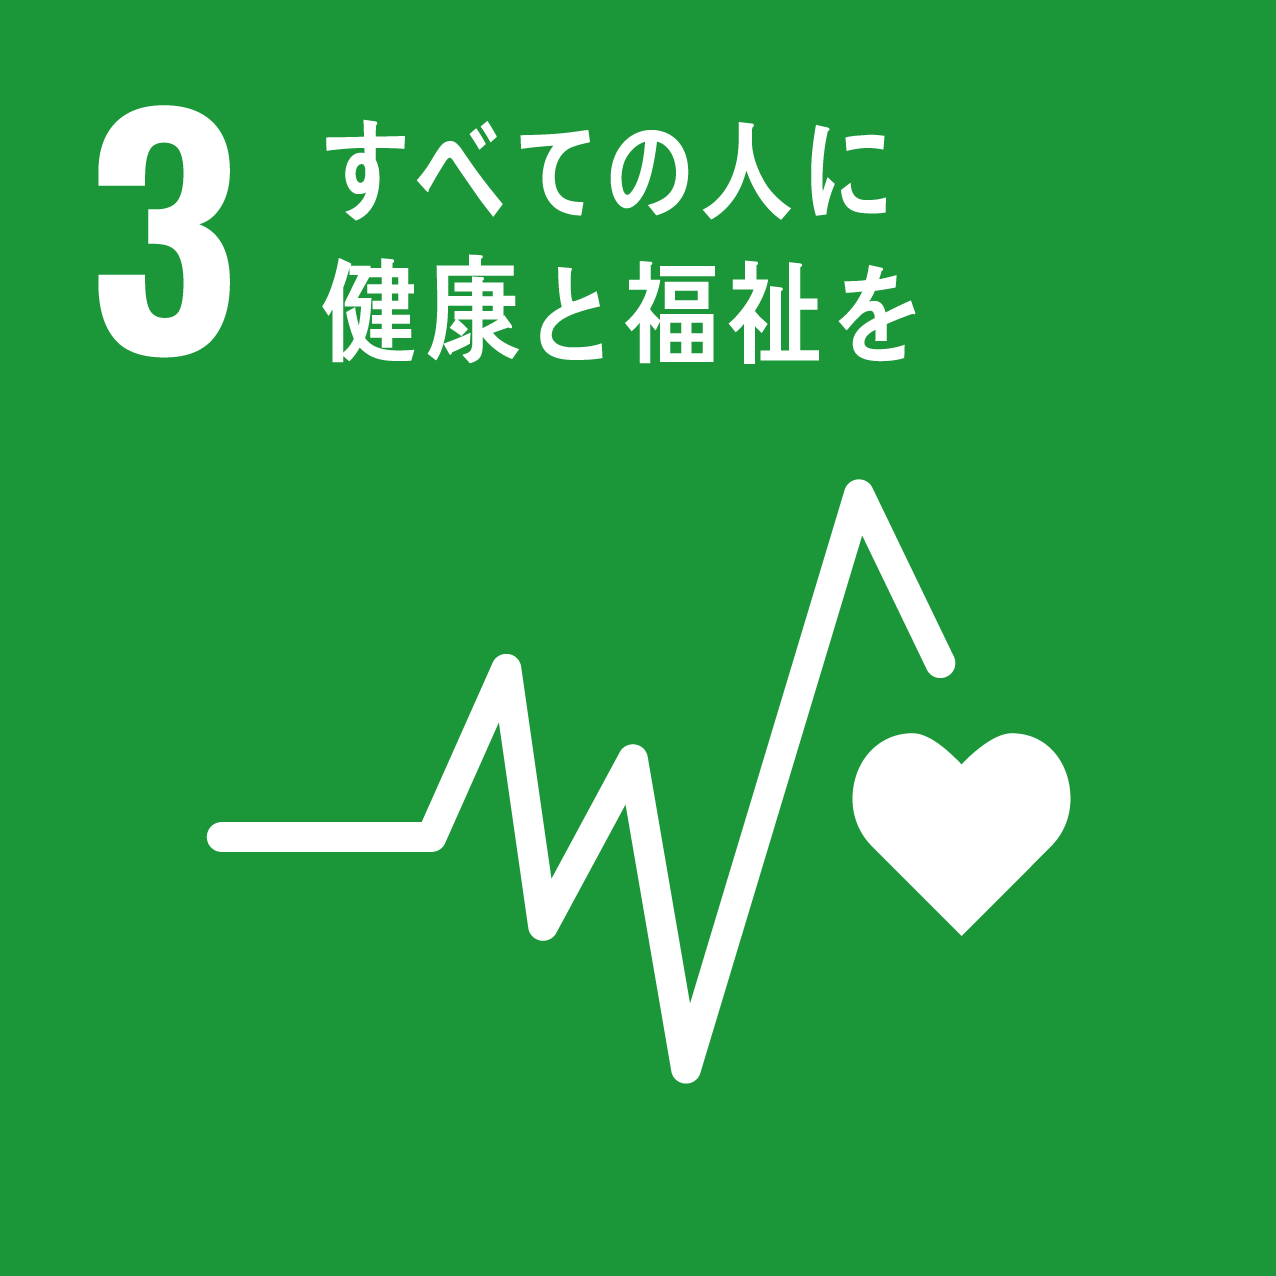 SDGsアイコン3「すべての人に健康と福祉を」